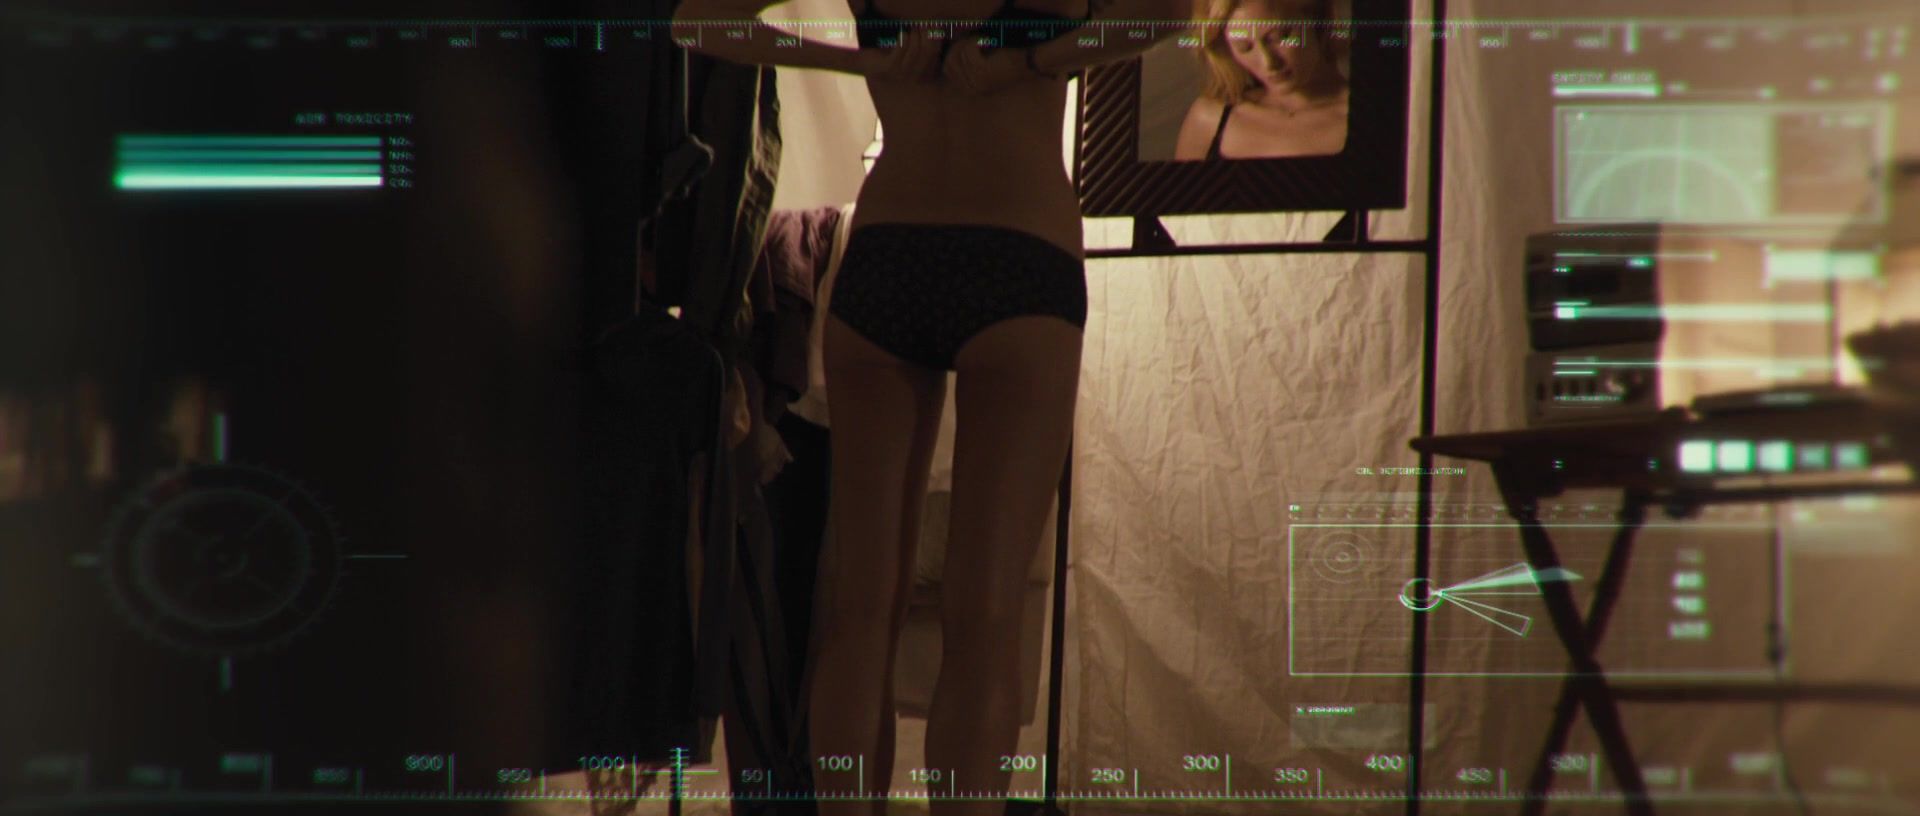 Furry Ashley Hinshaw - The Pyramid (2014) Big Tit Moms - 1